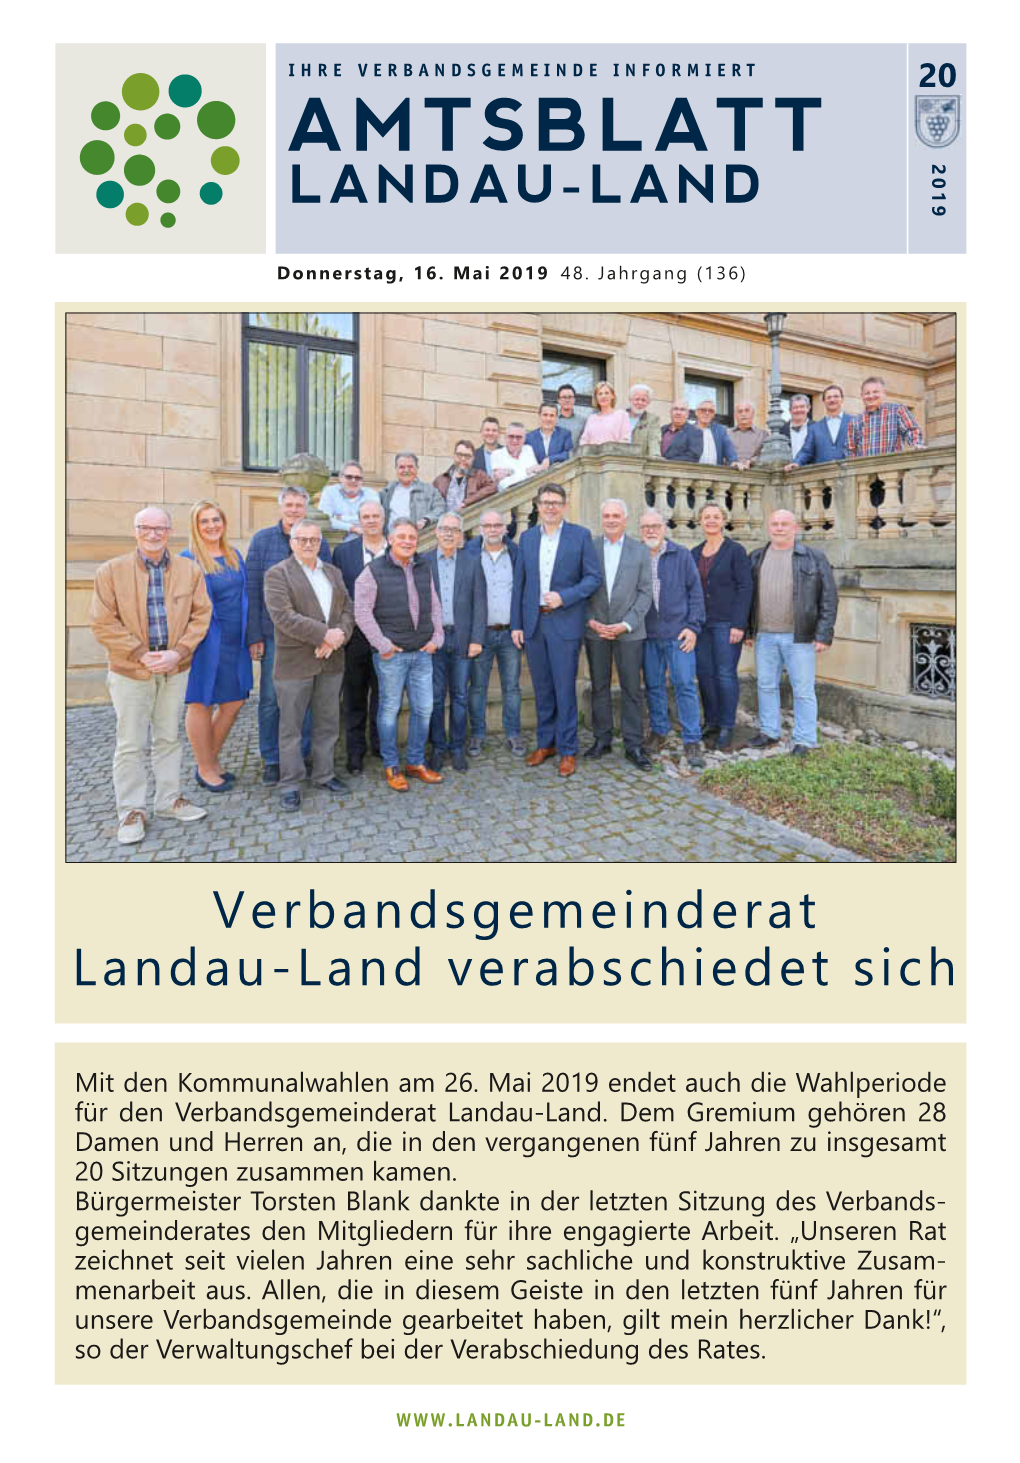 Amtsblatt 2019 Landau-Land